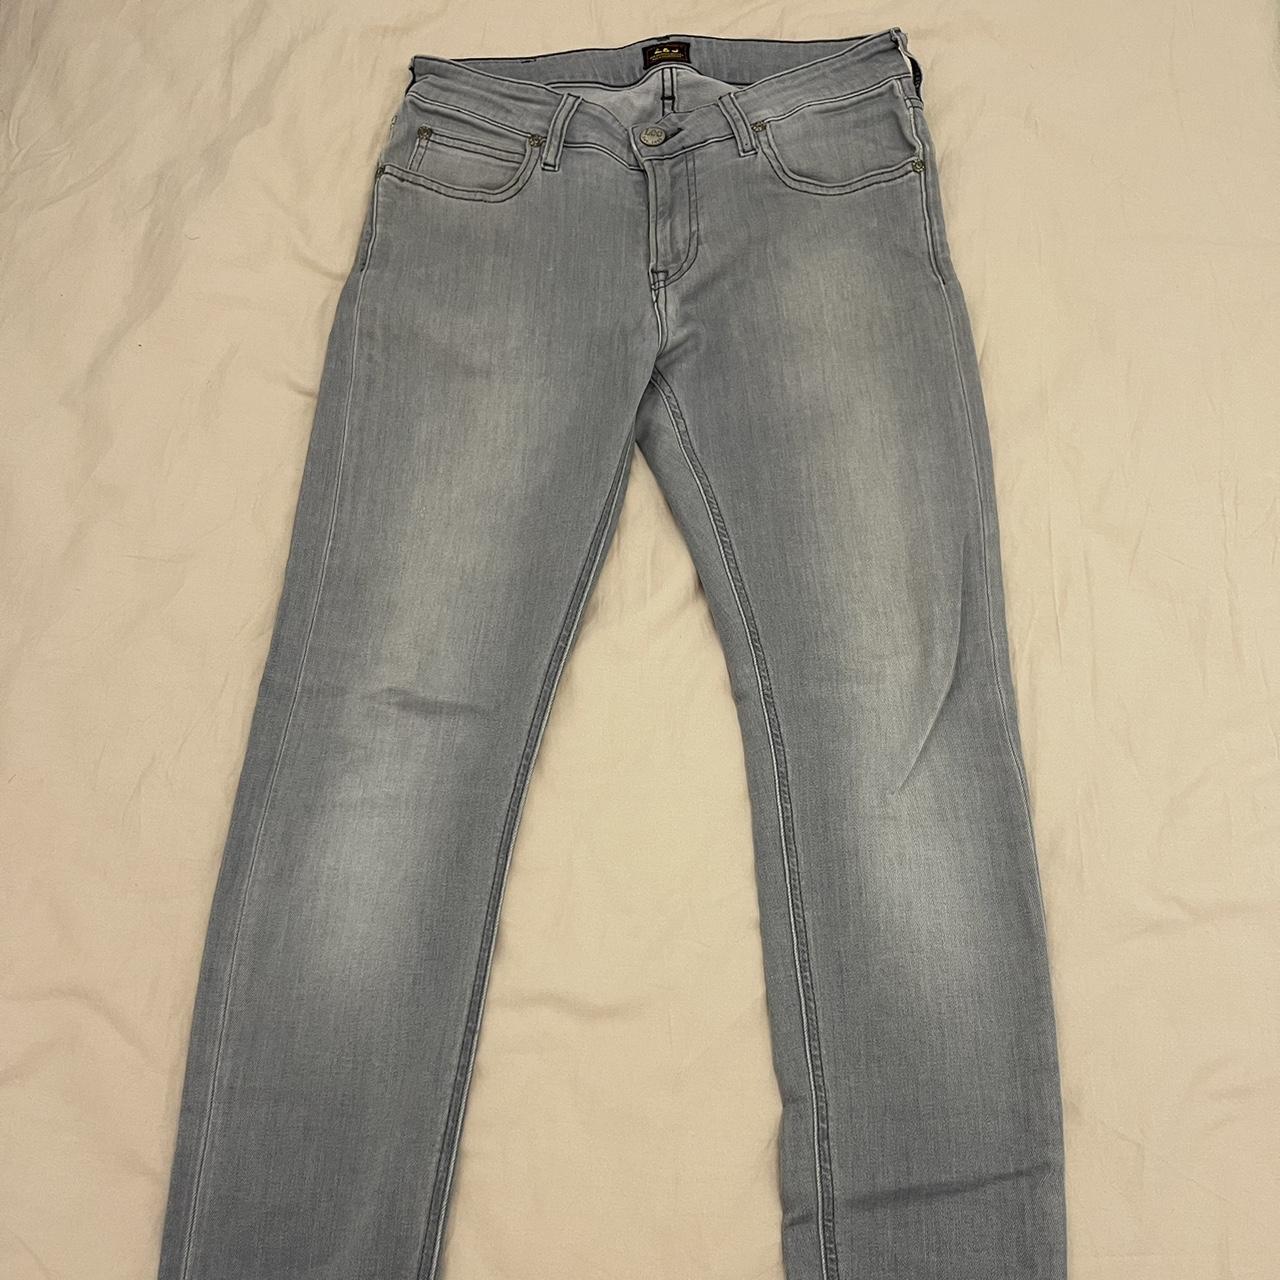 Grey Jeans Slim Fit - Depop